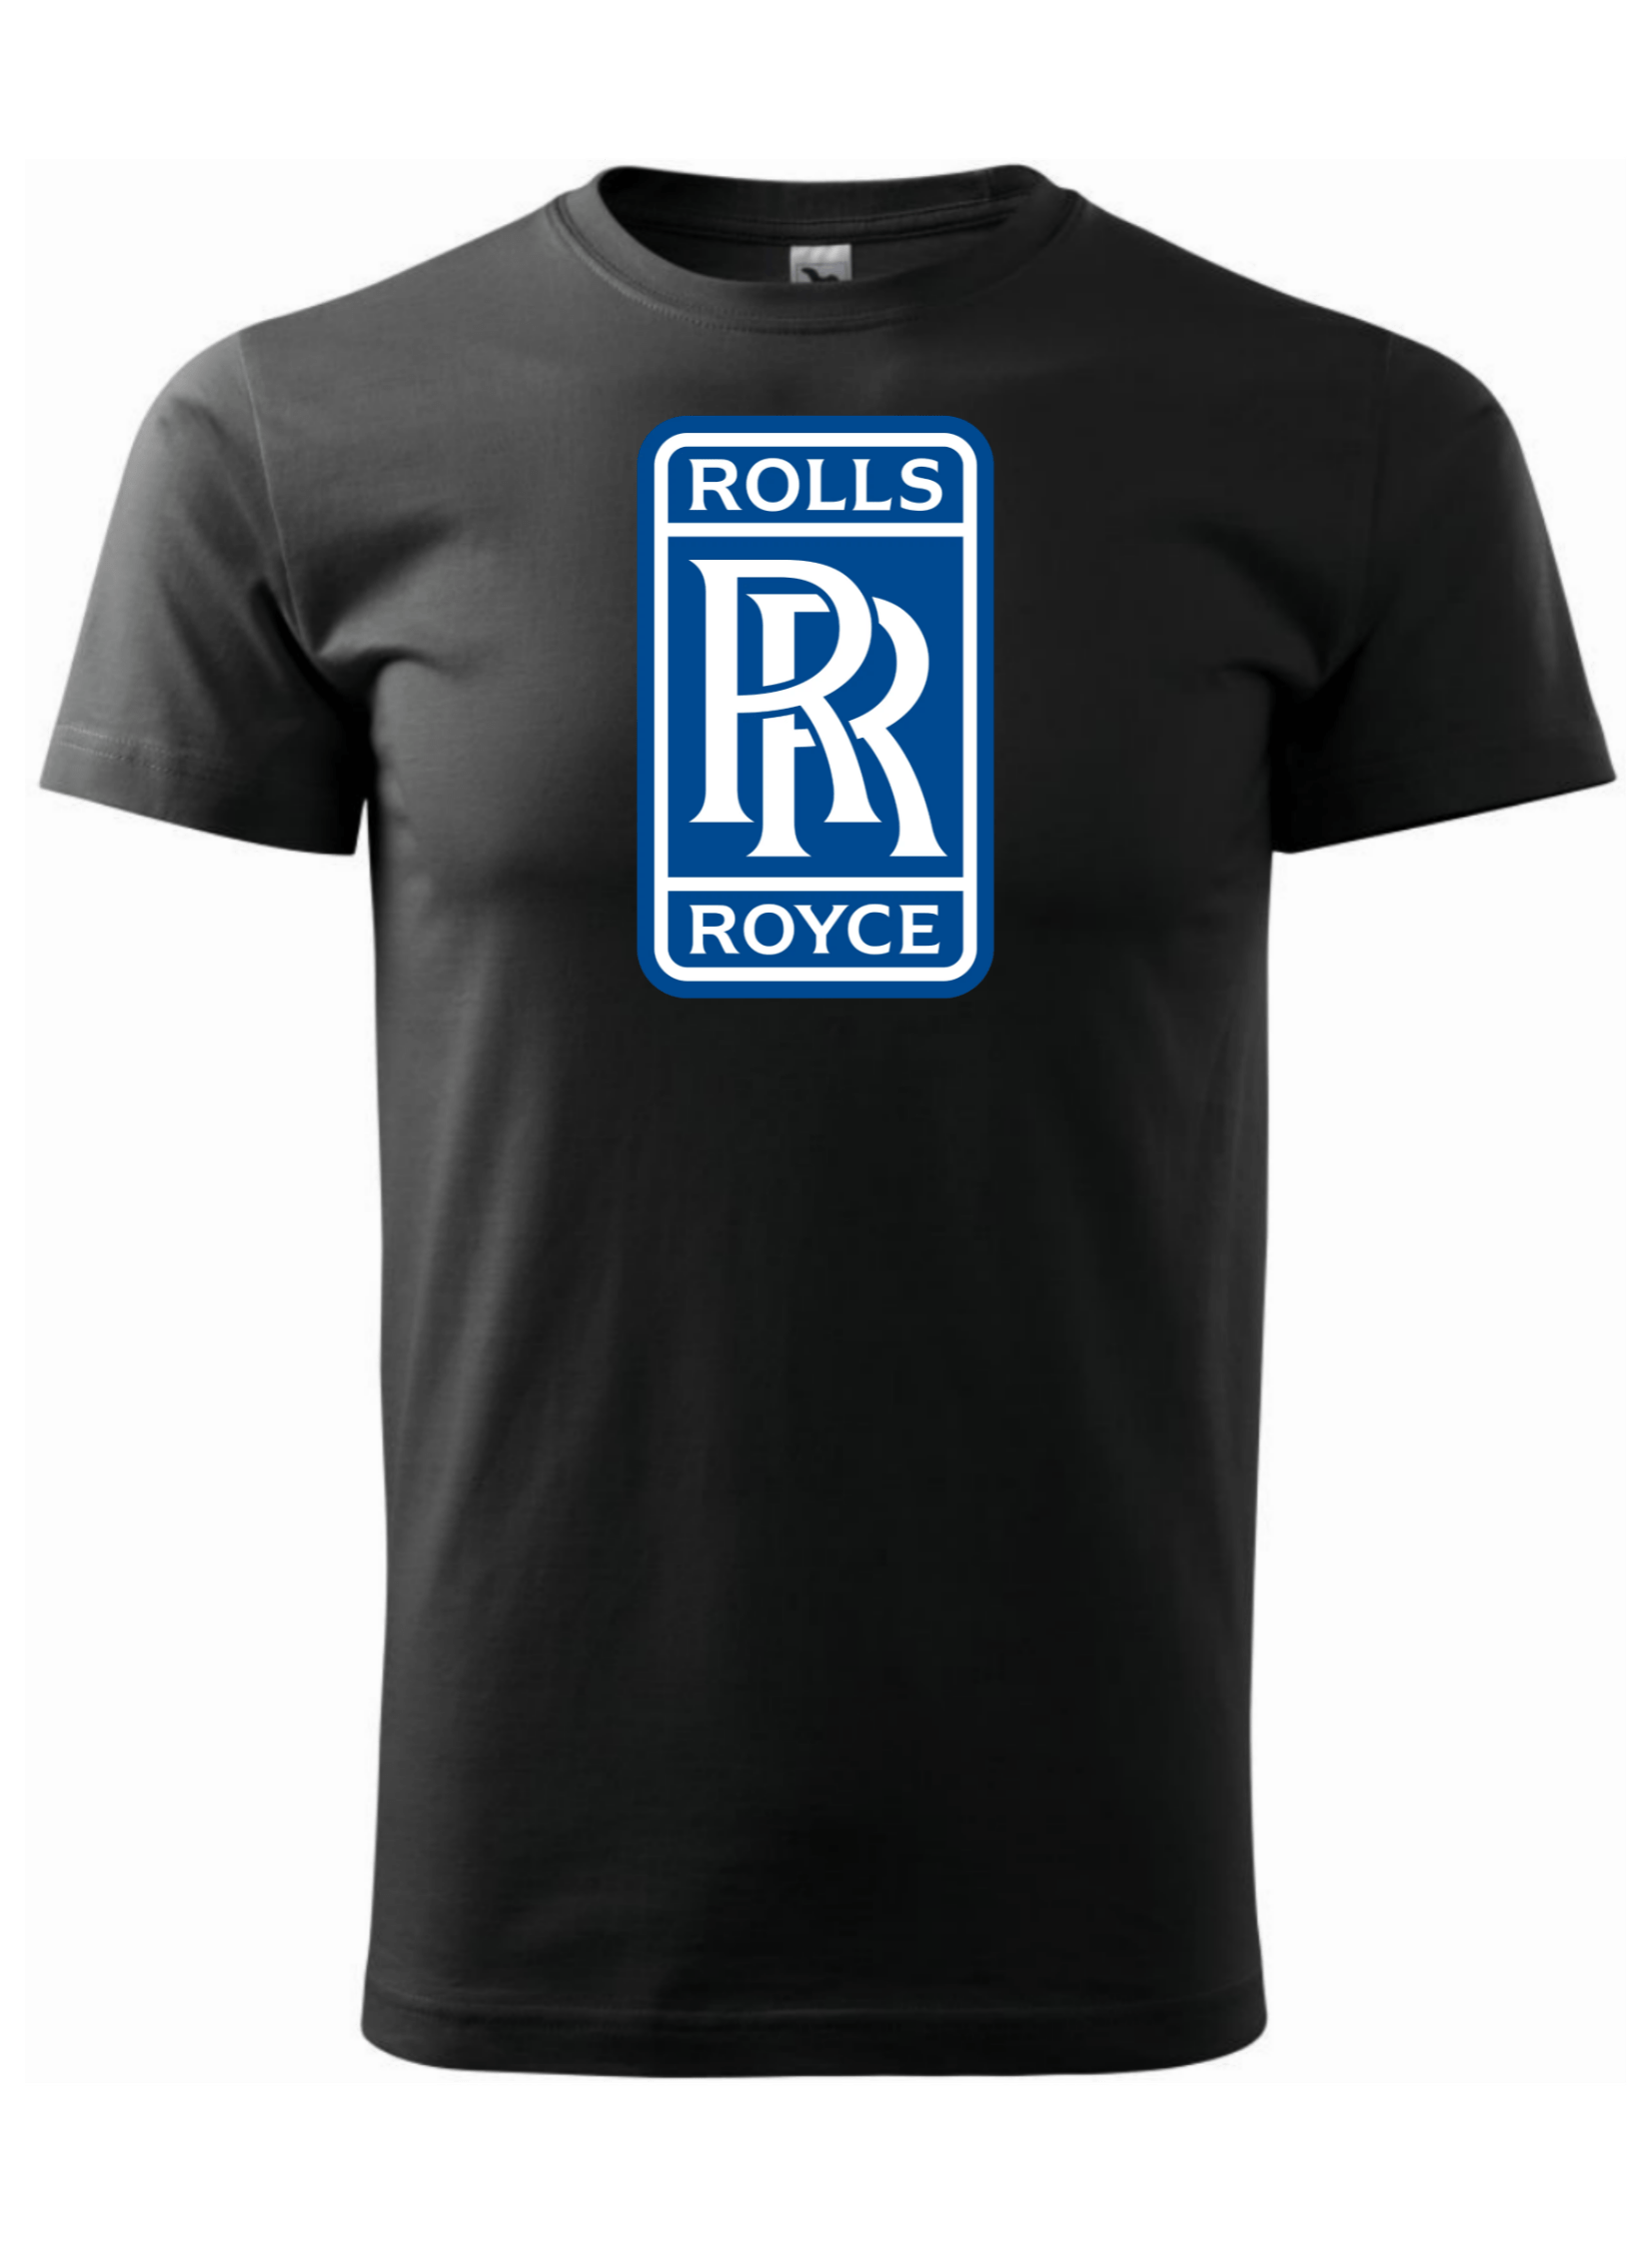 Pánské tričko s potiskem značky Rolls Royce